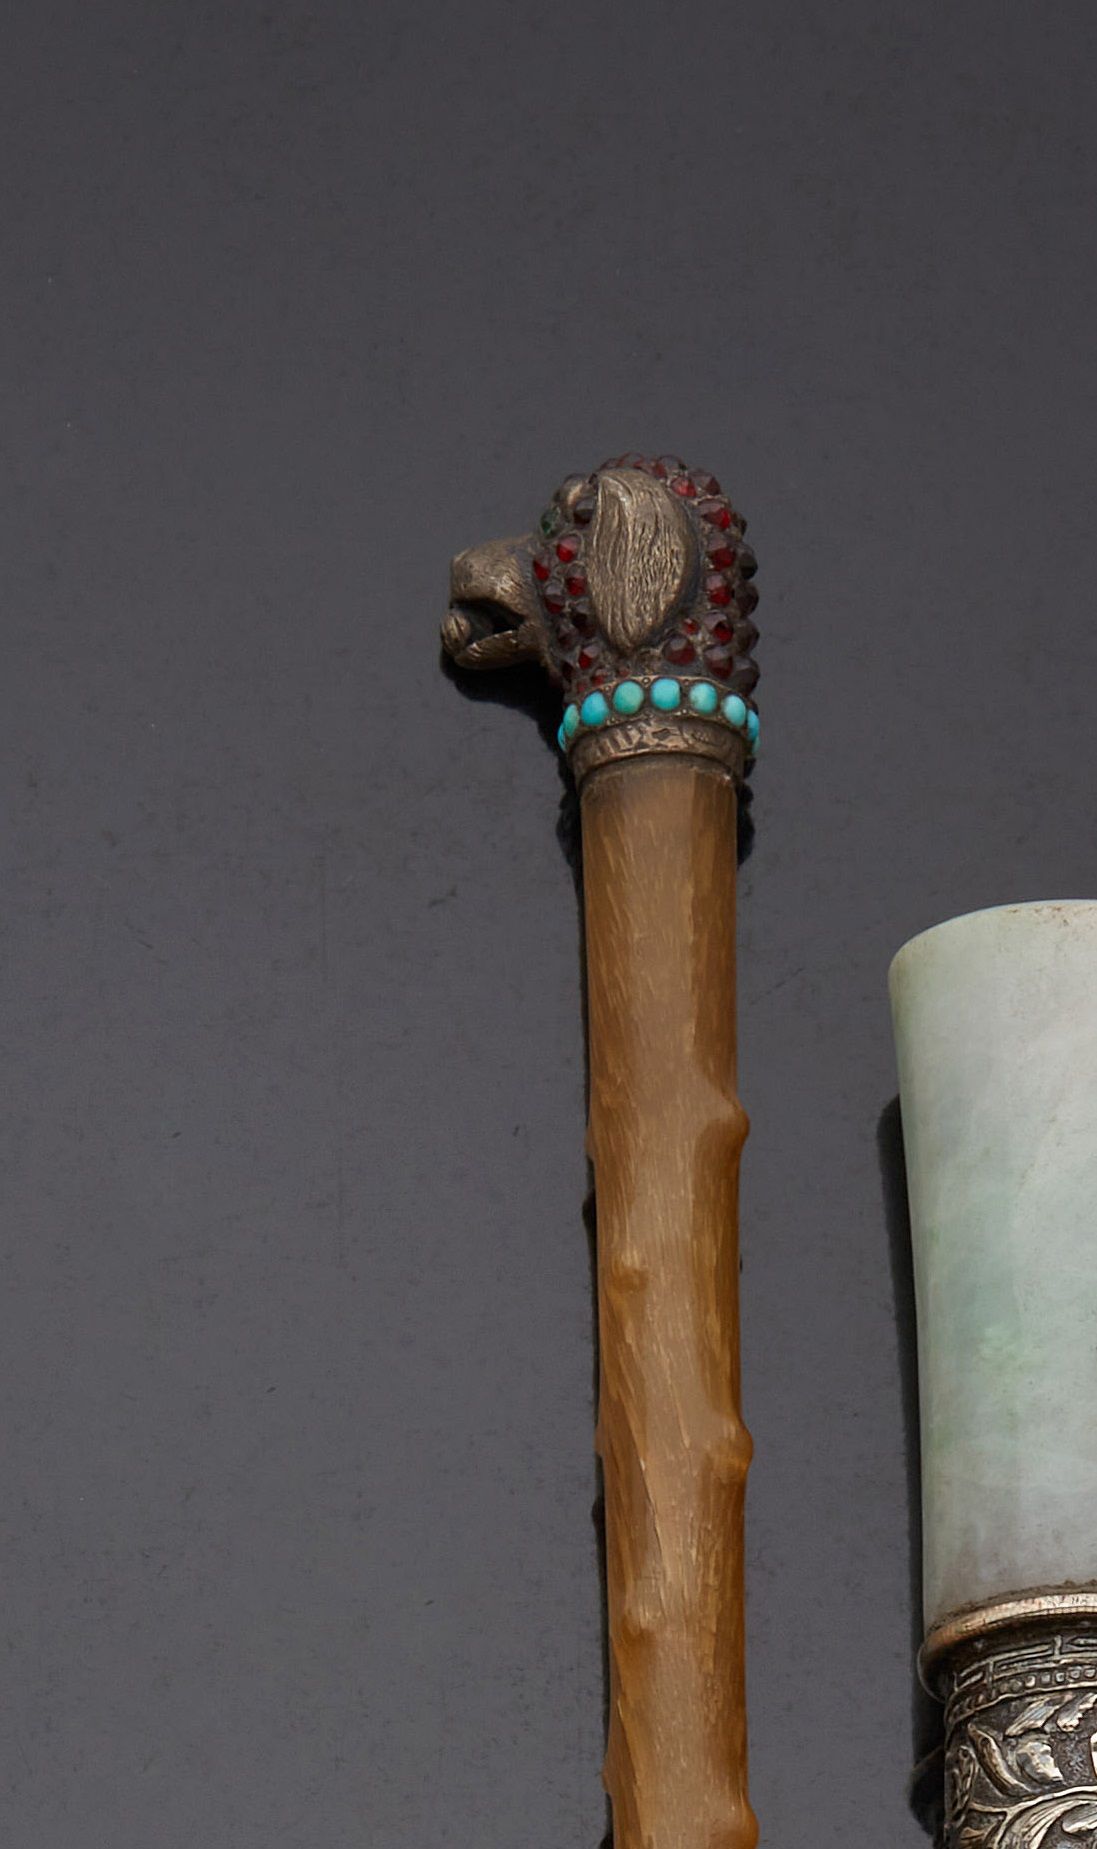 Null 牛角手杖，杖钮描绘了一个狗头，嘴里叼着一个球，项链镶嵌红色宝石和凸圆形绿松石